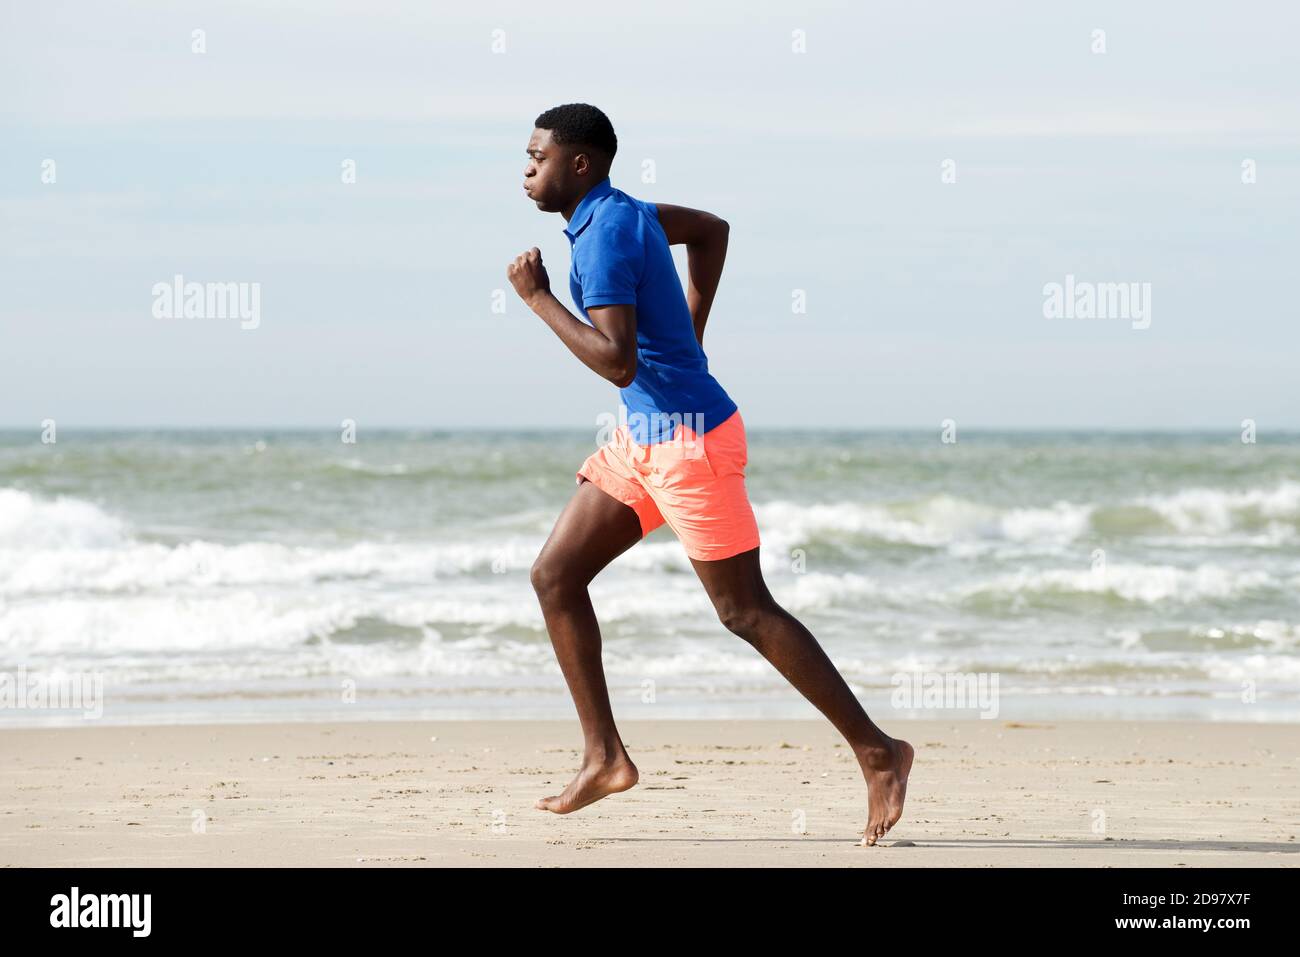 Homme afro-américain plein corps en bonne santé, course pieds nus à la plage Banque D'Images